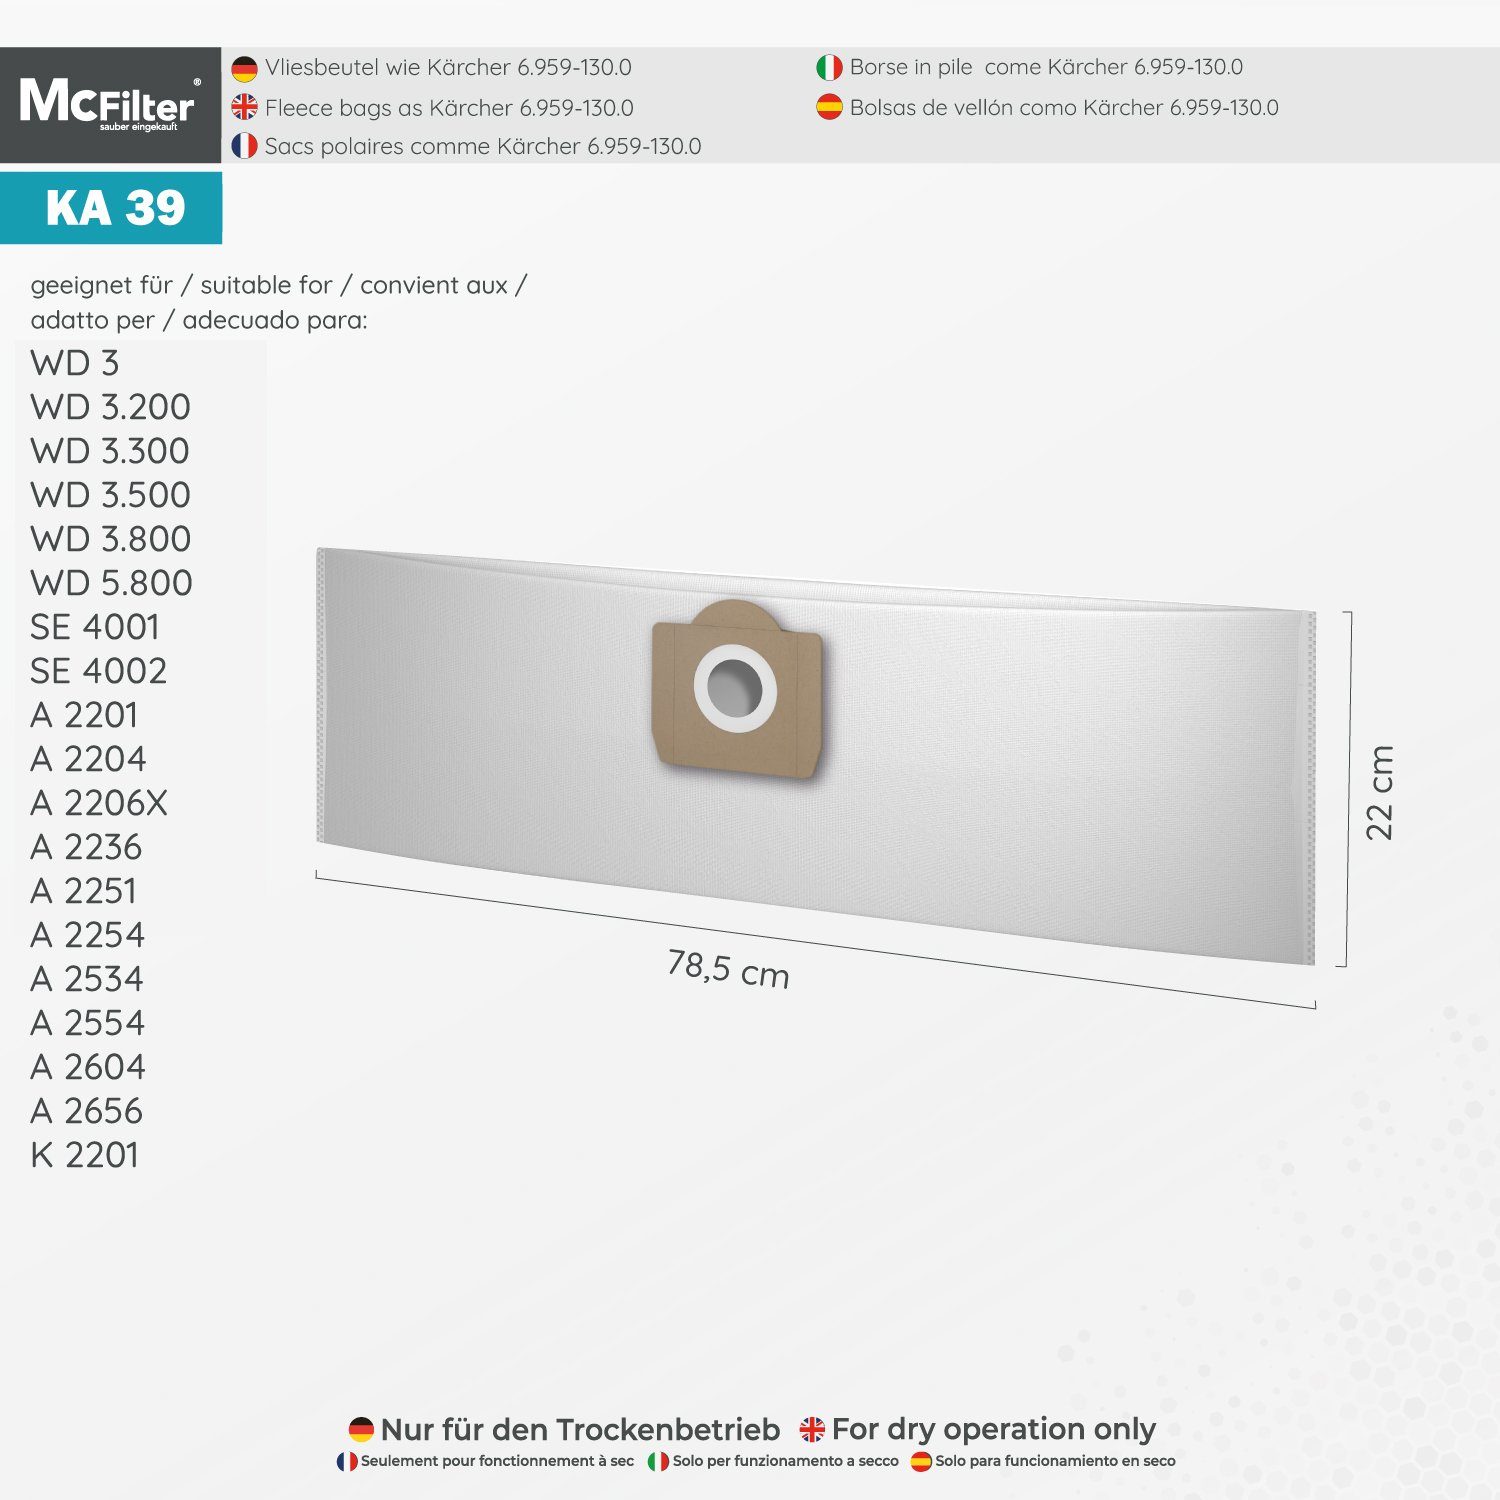 McFilter Staubsaugerbeutel geeignet Kärcher Filter, 22 St., + (Patronenfilter) passend für Kit 3 MV MV3 (20 Stück) für Alternative (Beutel), 6.959-130.0 Fireplace 2 6.414-552.0 Staubsauger, für